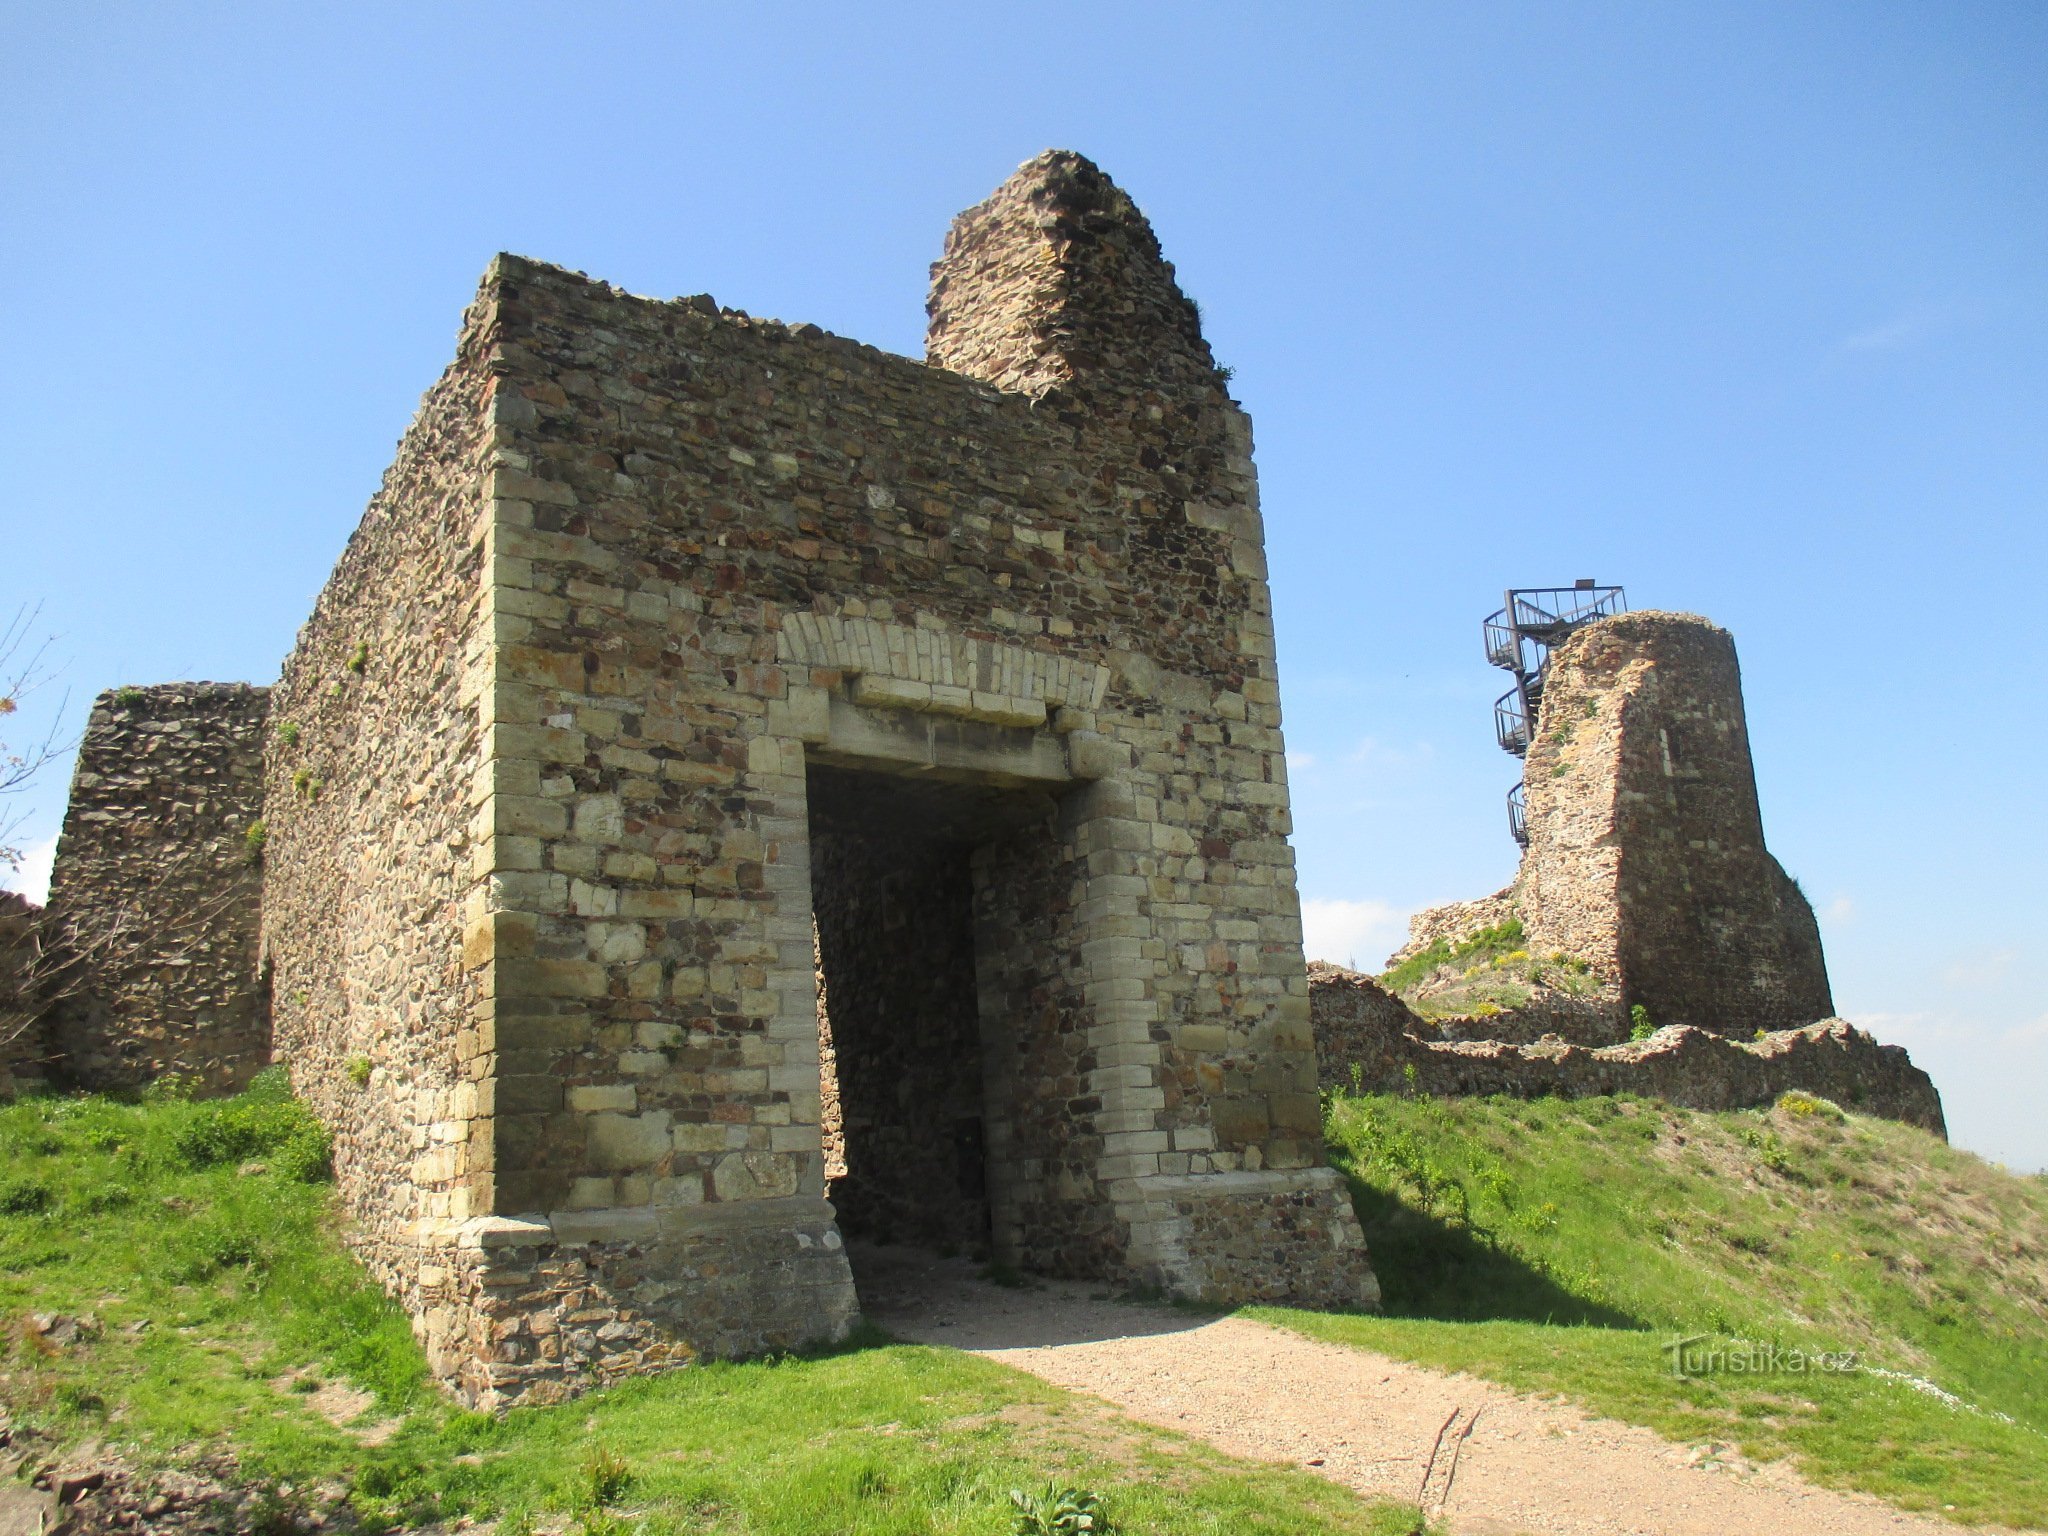 τα ερείπια του κάστρου της Λιχνίκας και του παρατηρητηρίου της Μιλάδας